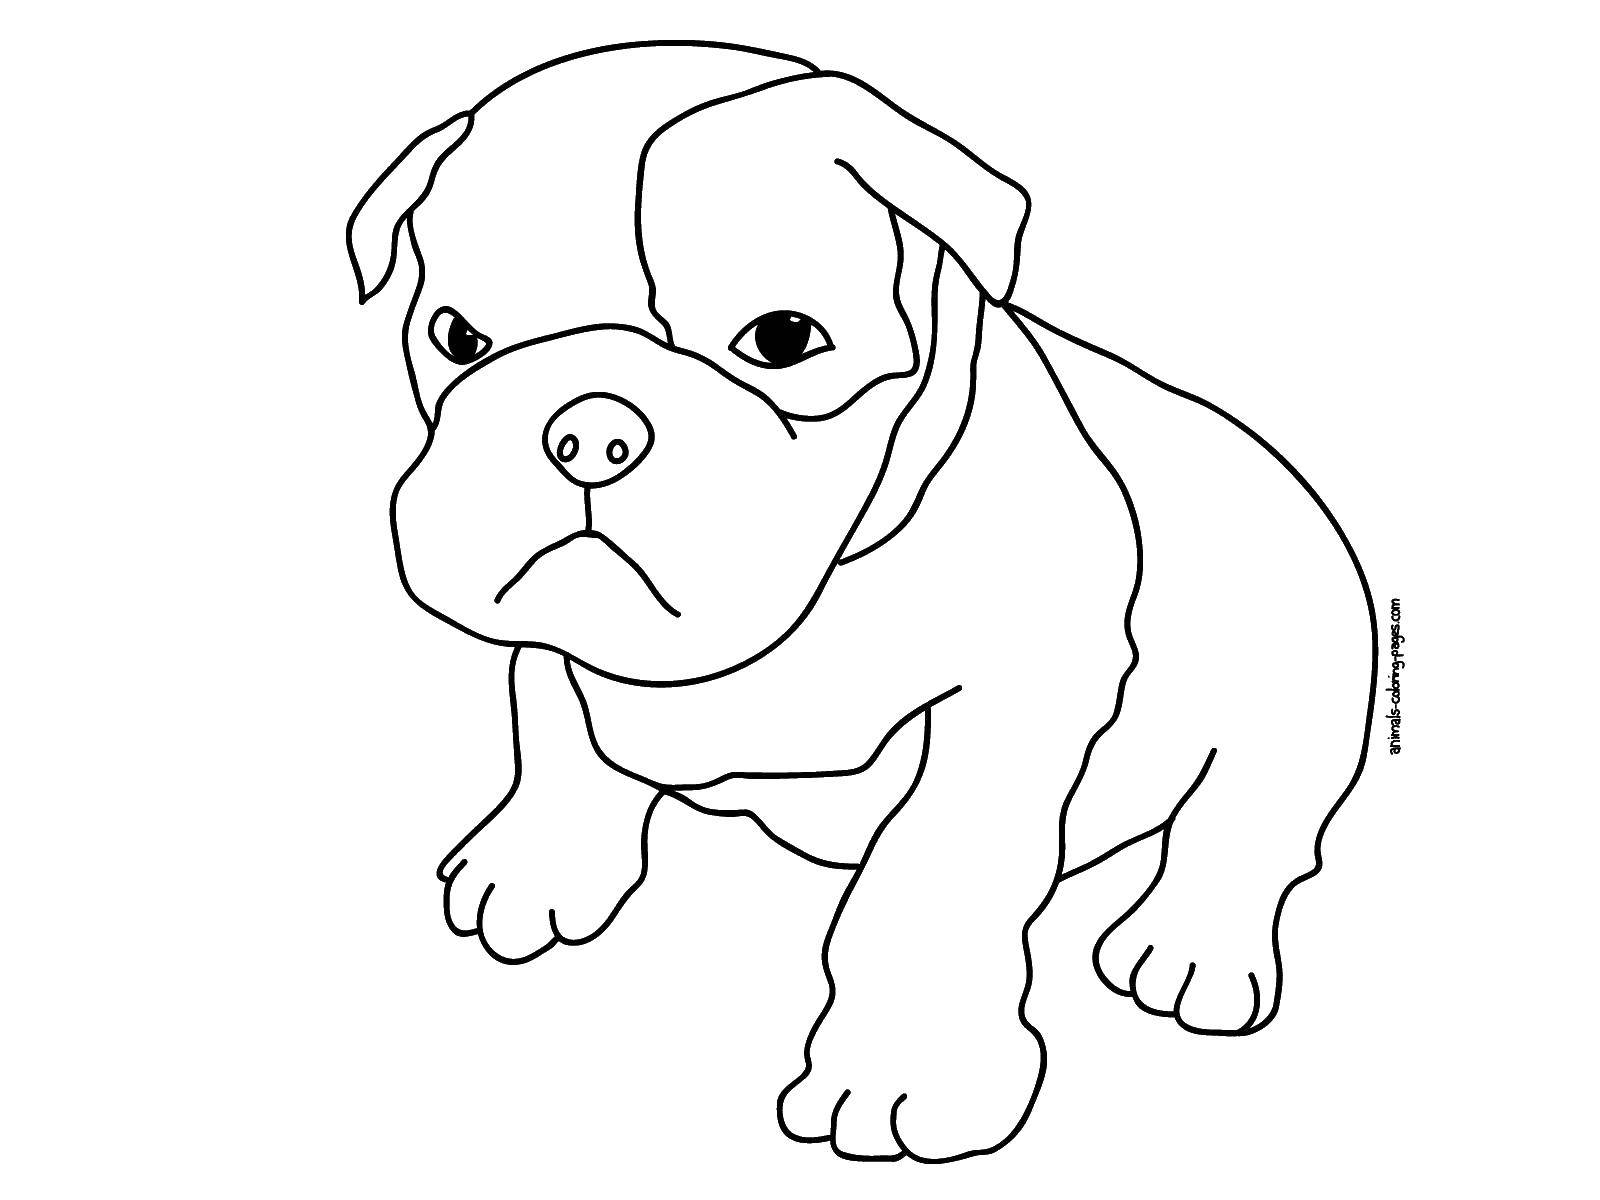 Coloring Angry bulldog. Category animals. Tags:  Animals, dog, bulldog.